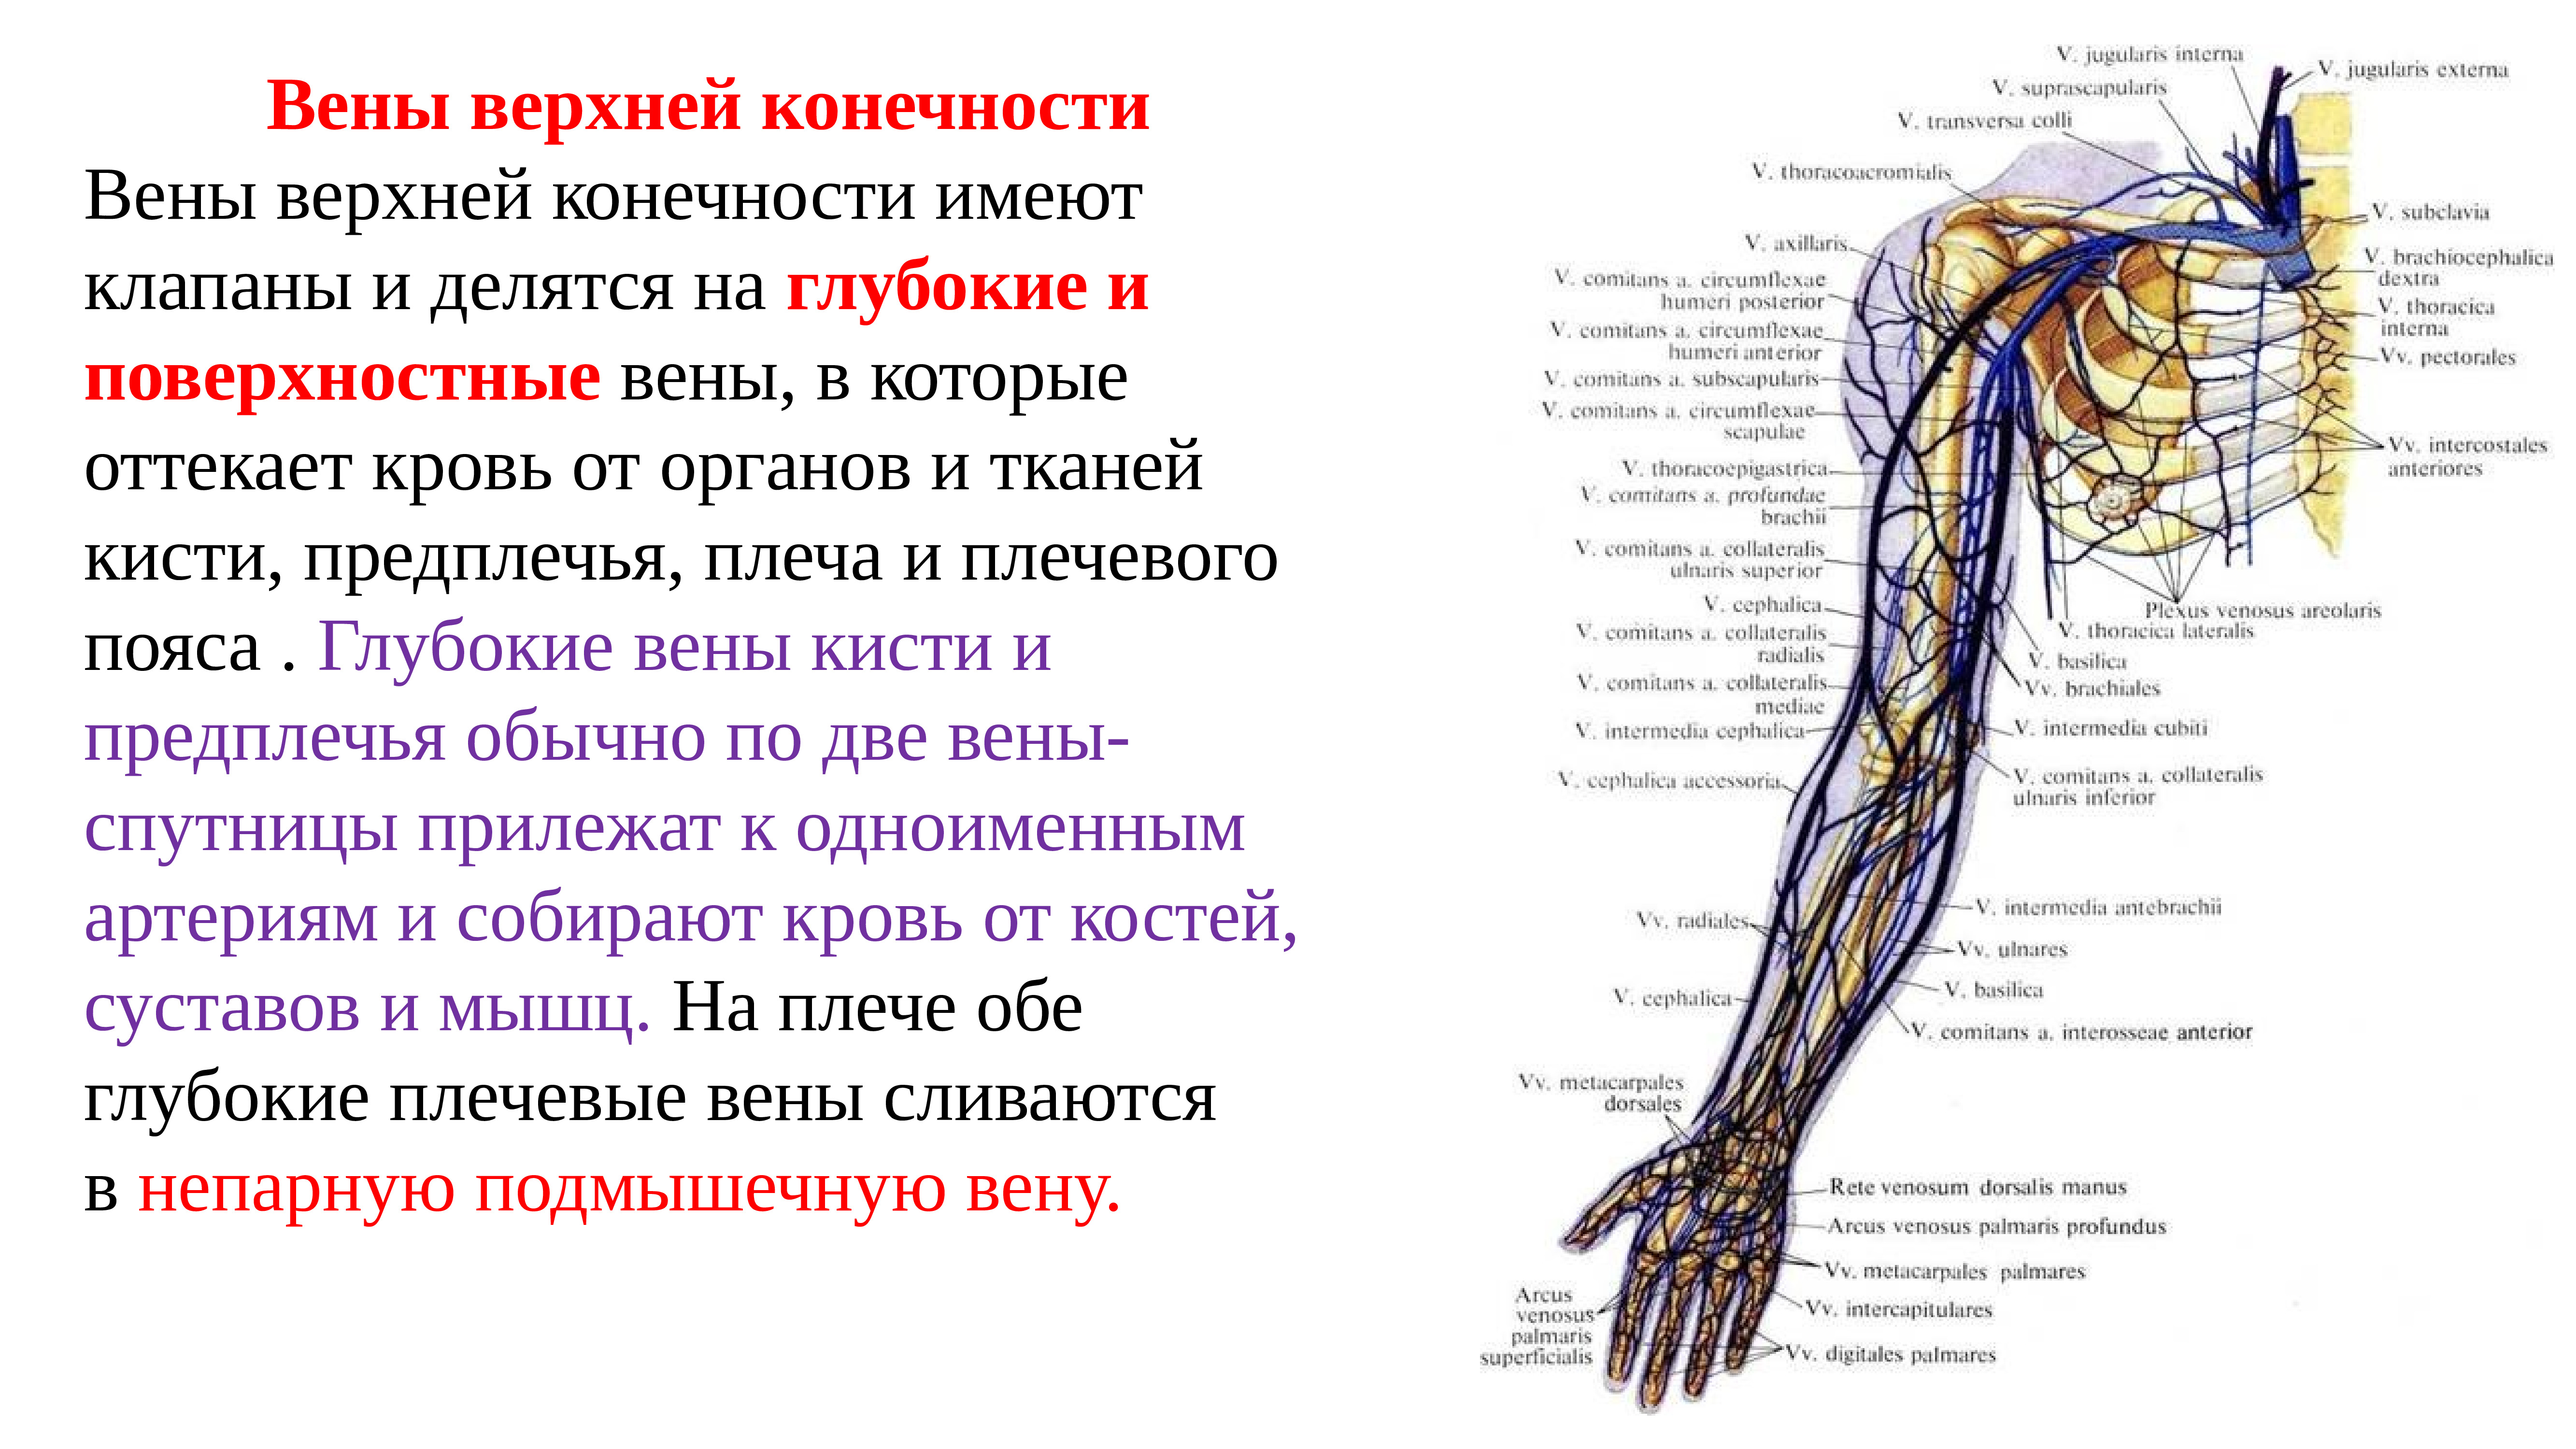 Кровообращение верхней конечности. Сосуды верхней конечности анатомия. Вены руки анатомия схема. Вены верхних конечностей УЗИ анатомия. Вены верхней конечности анатомия схема.